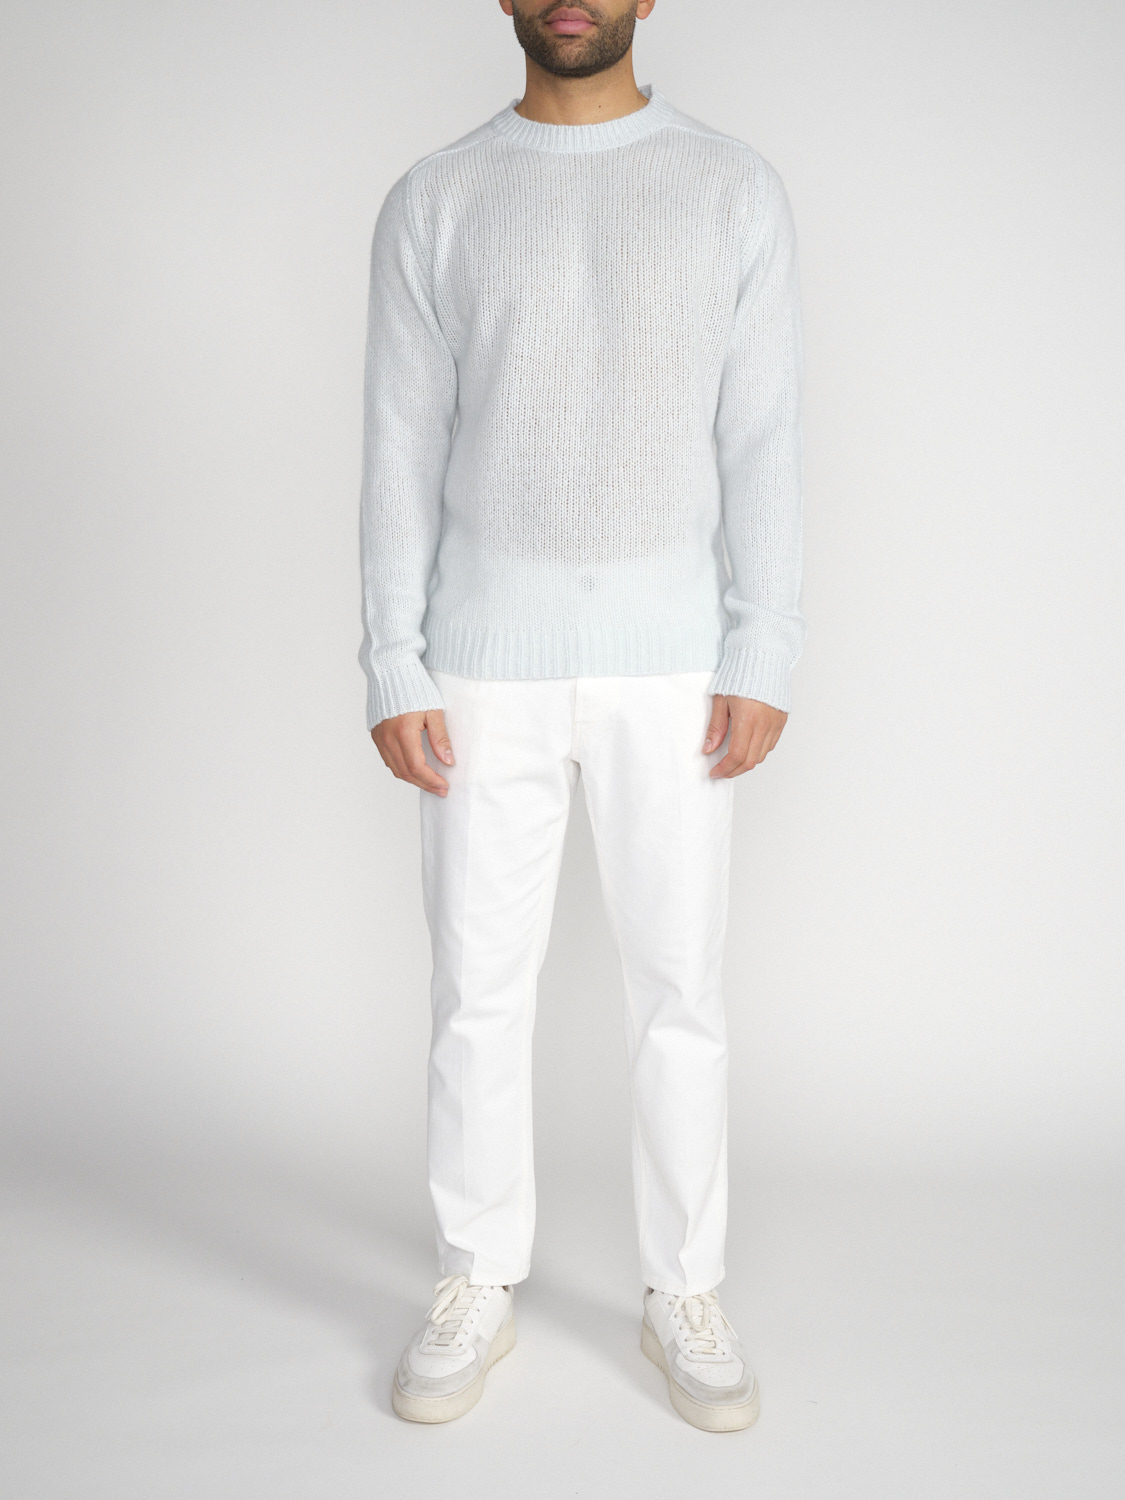 Stephan Boya Boya Leo - Lightweight knitted sweater in cashmere   mint M